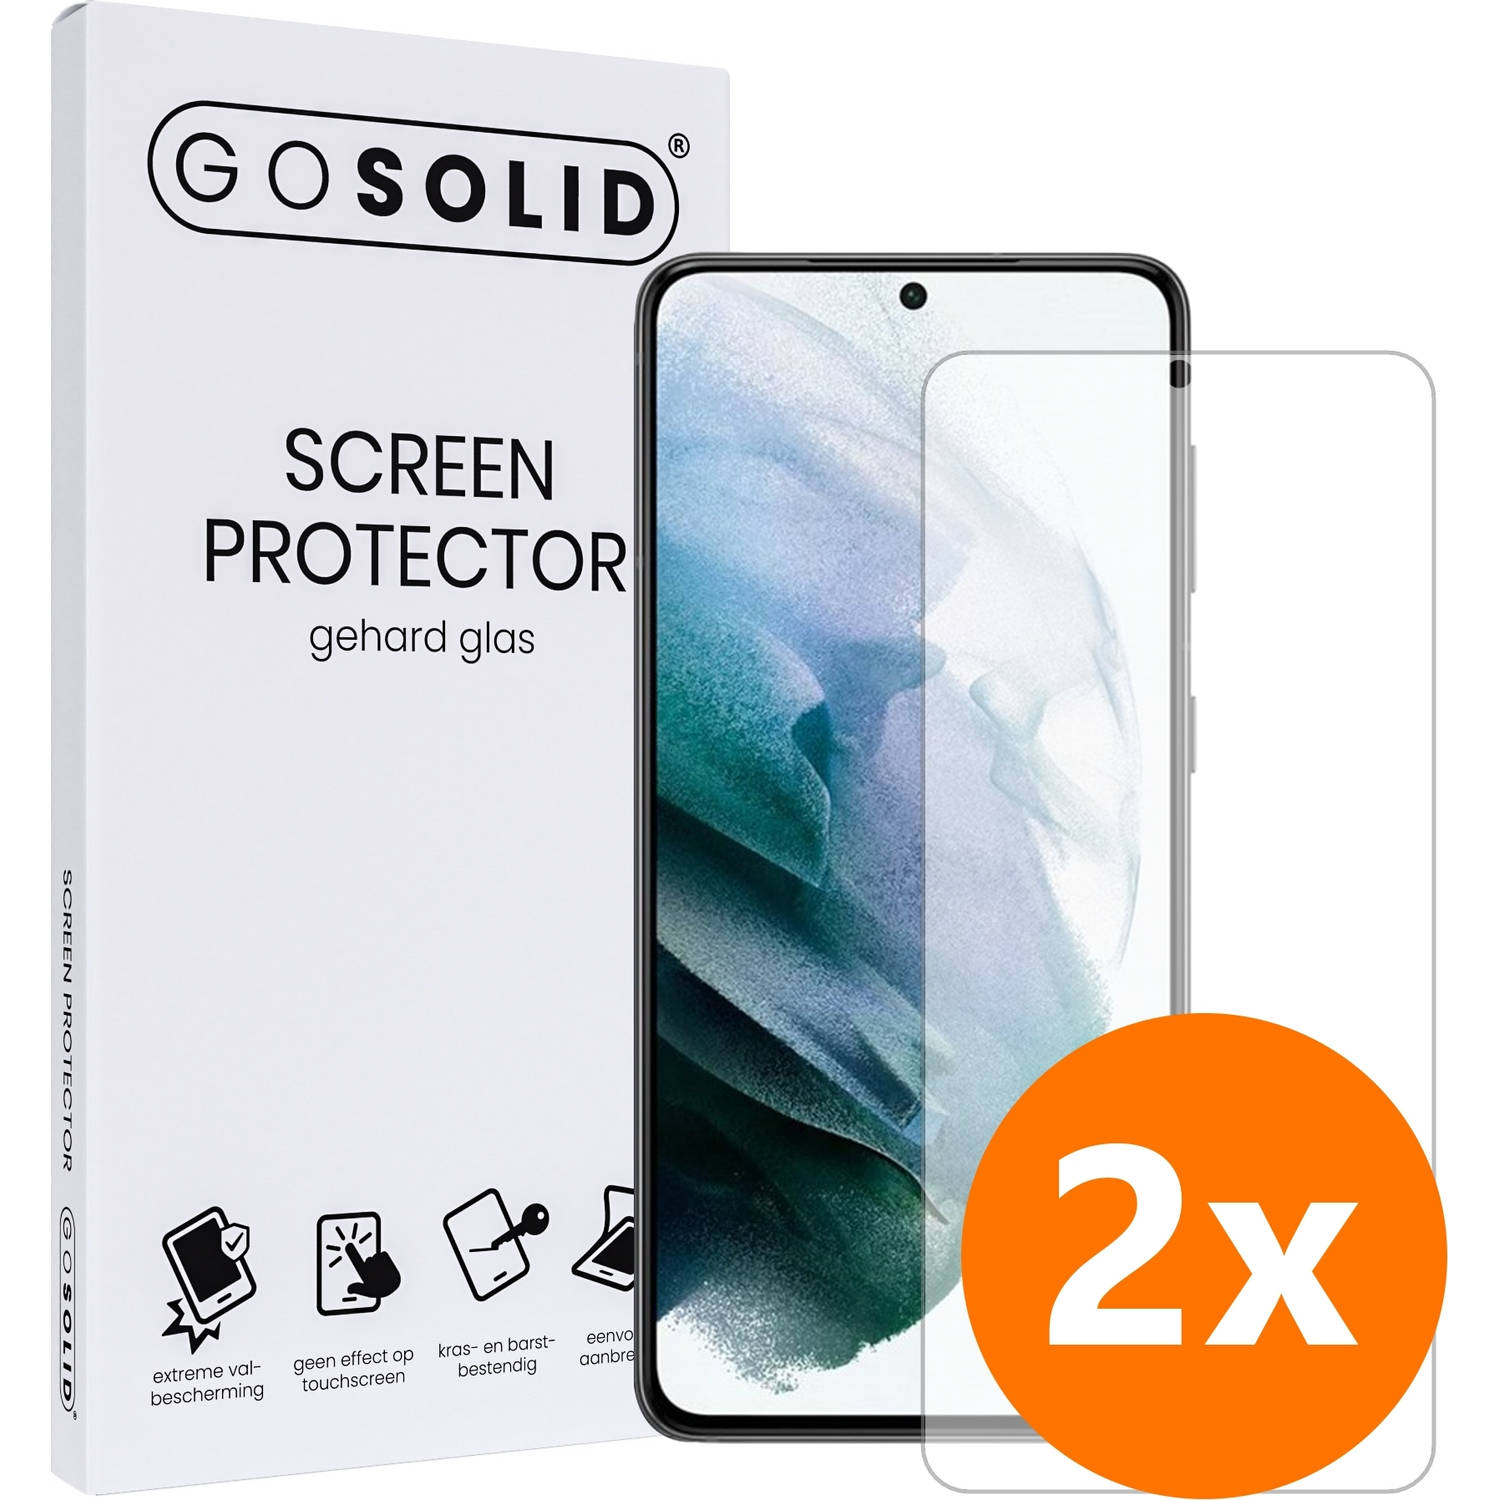 GO SOLID! Screenprotector voor Oppo Reno 8 Pro+ gehard glas Duopack